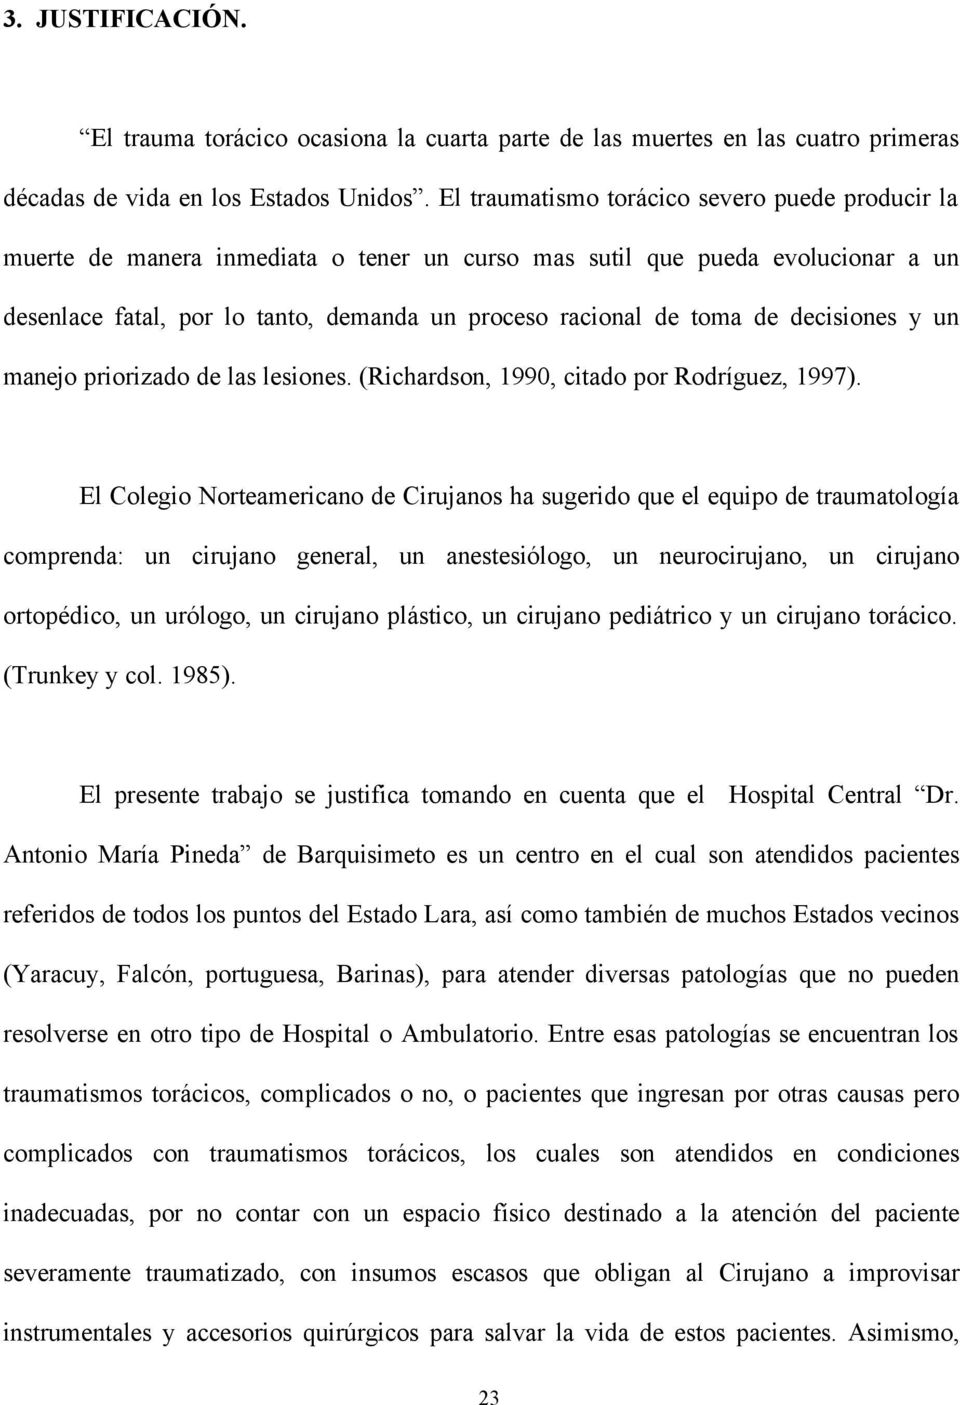 decisiones y un manejo priorizado de las lesiones. (Richardson, 1990, citado por Rodríguez, 1997).